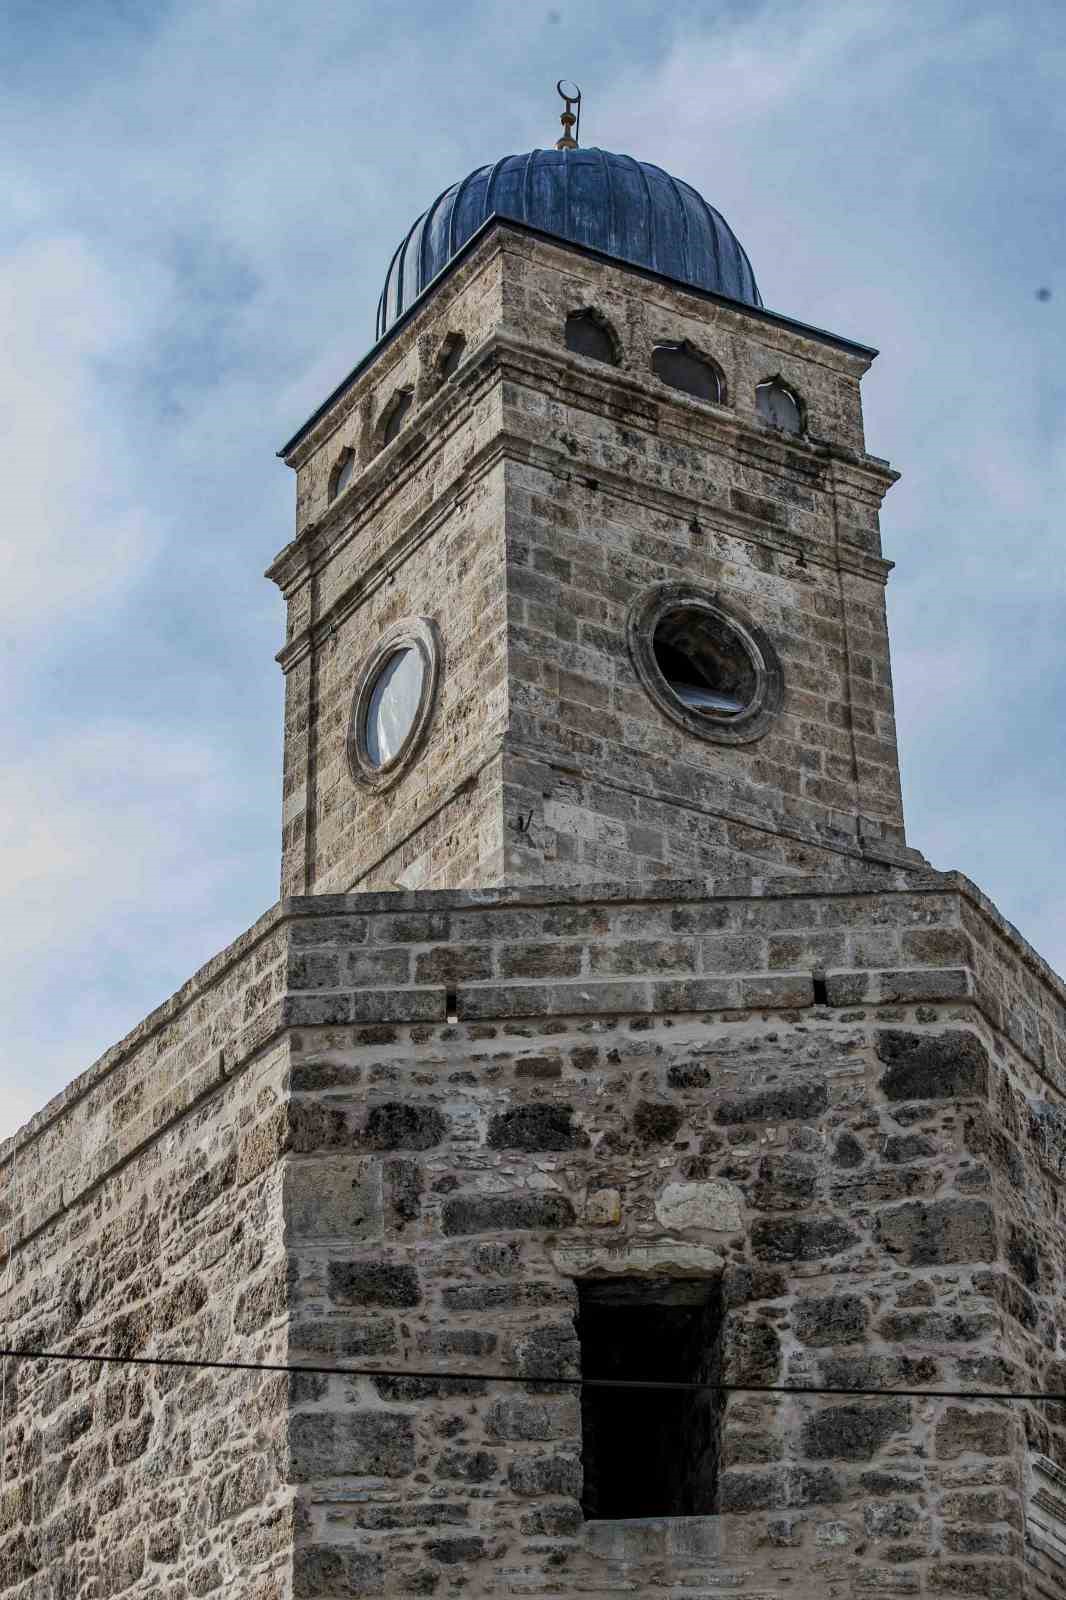 Antalyanin Simgesi Saat Kulesi Saatine Kavusuyor 9 Ujbgbtln